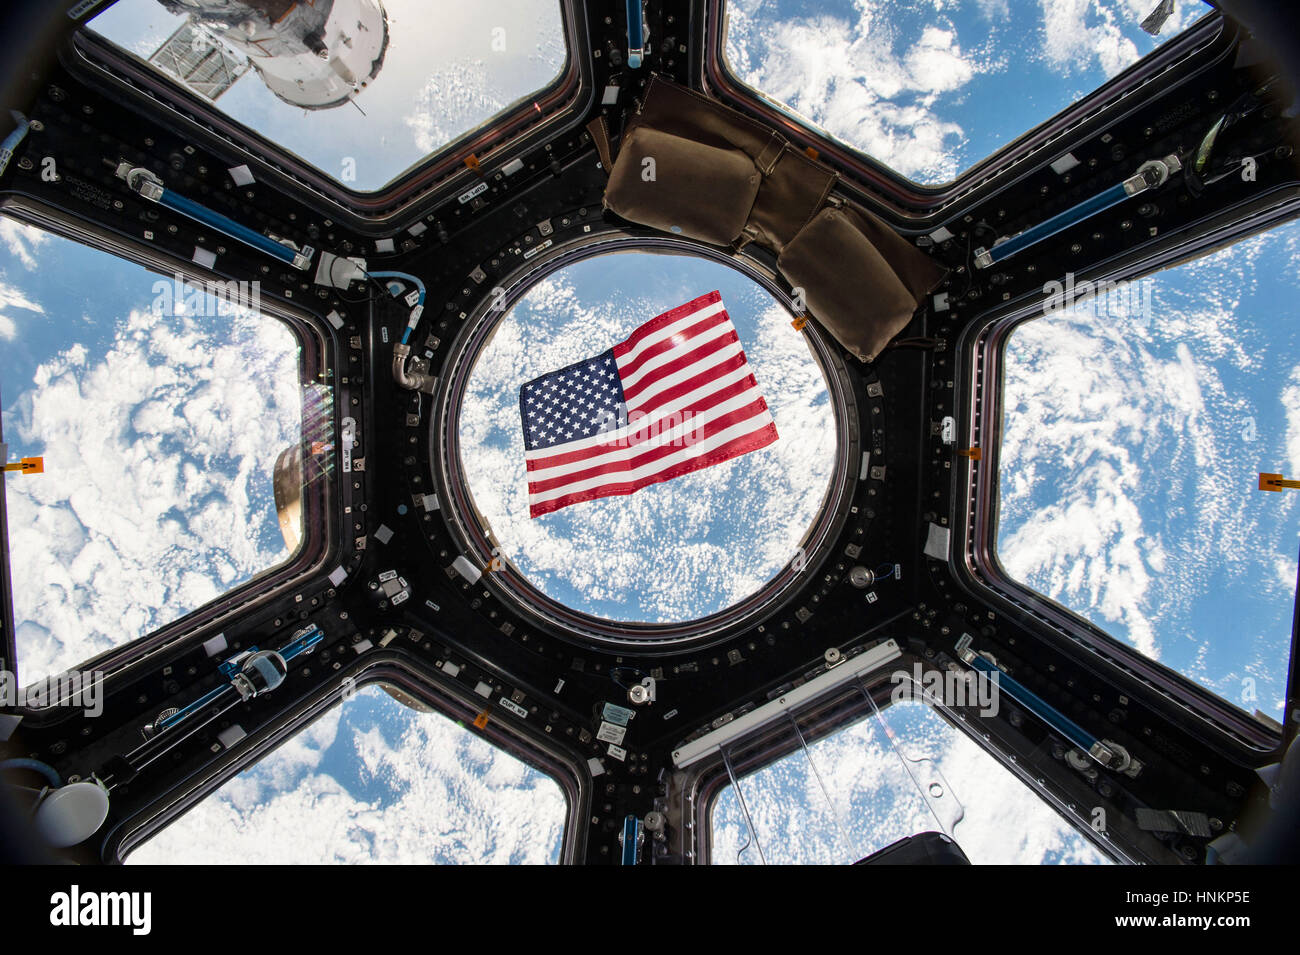 Amerikanische Flagge ist sichtbar in den Schaufenstern der Kuppel an Bord der internationalen Raumstation ISS Stockfoto